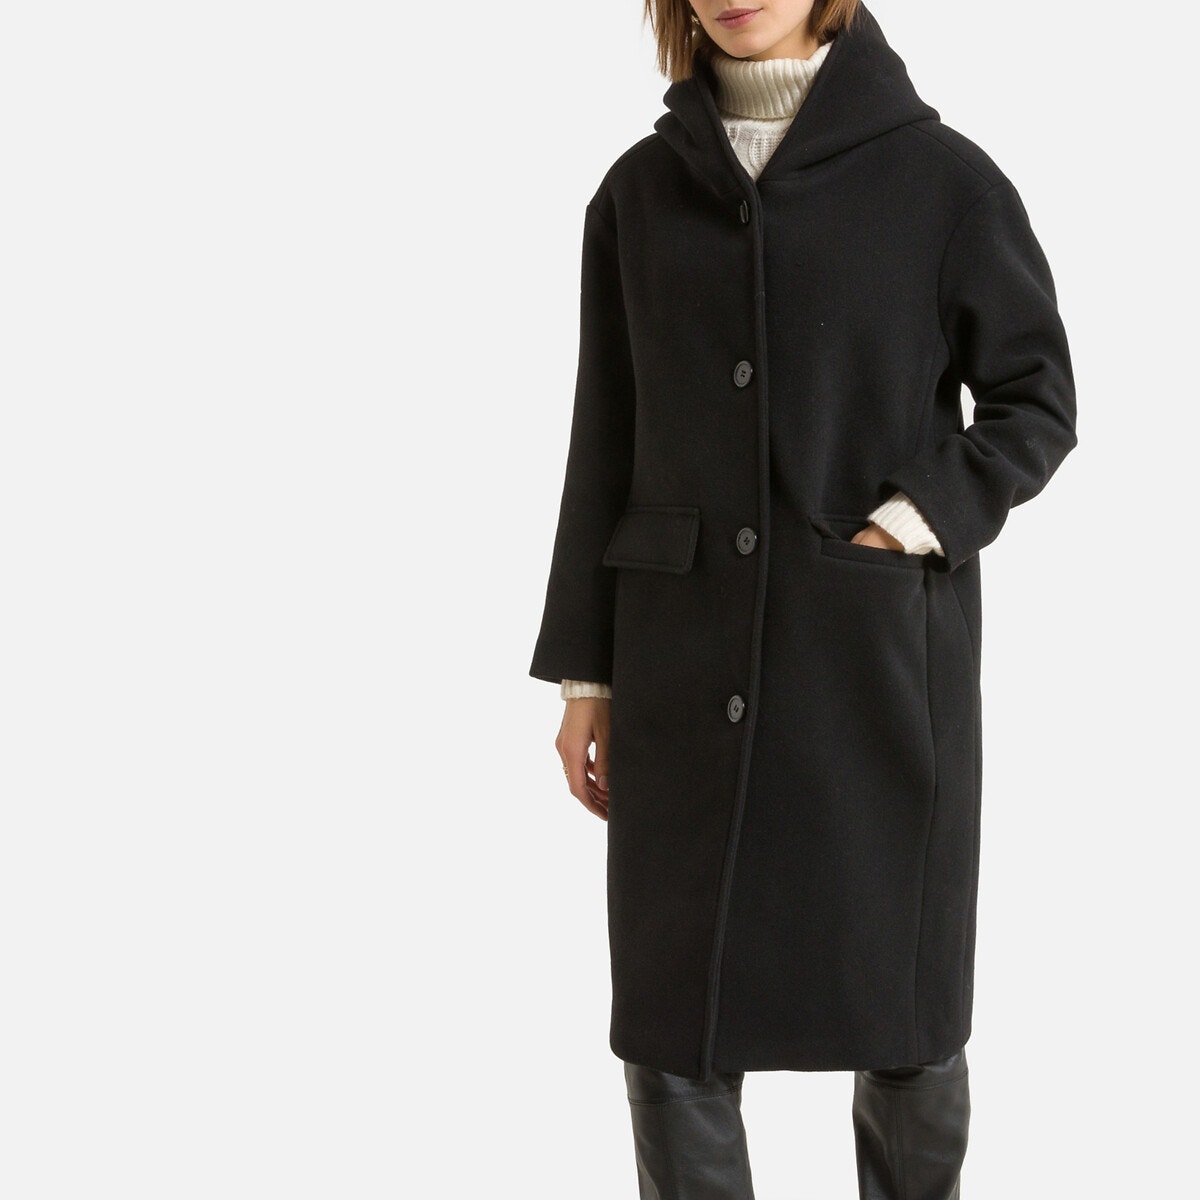 Μακρύ παλτό με κουκούλα και κουμπιά